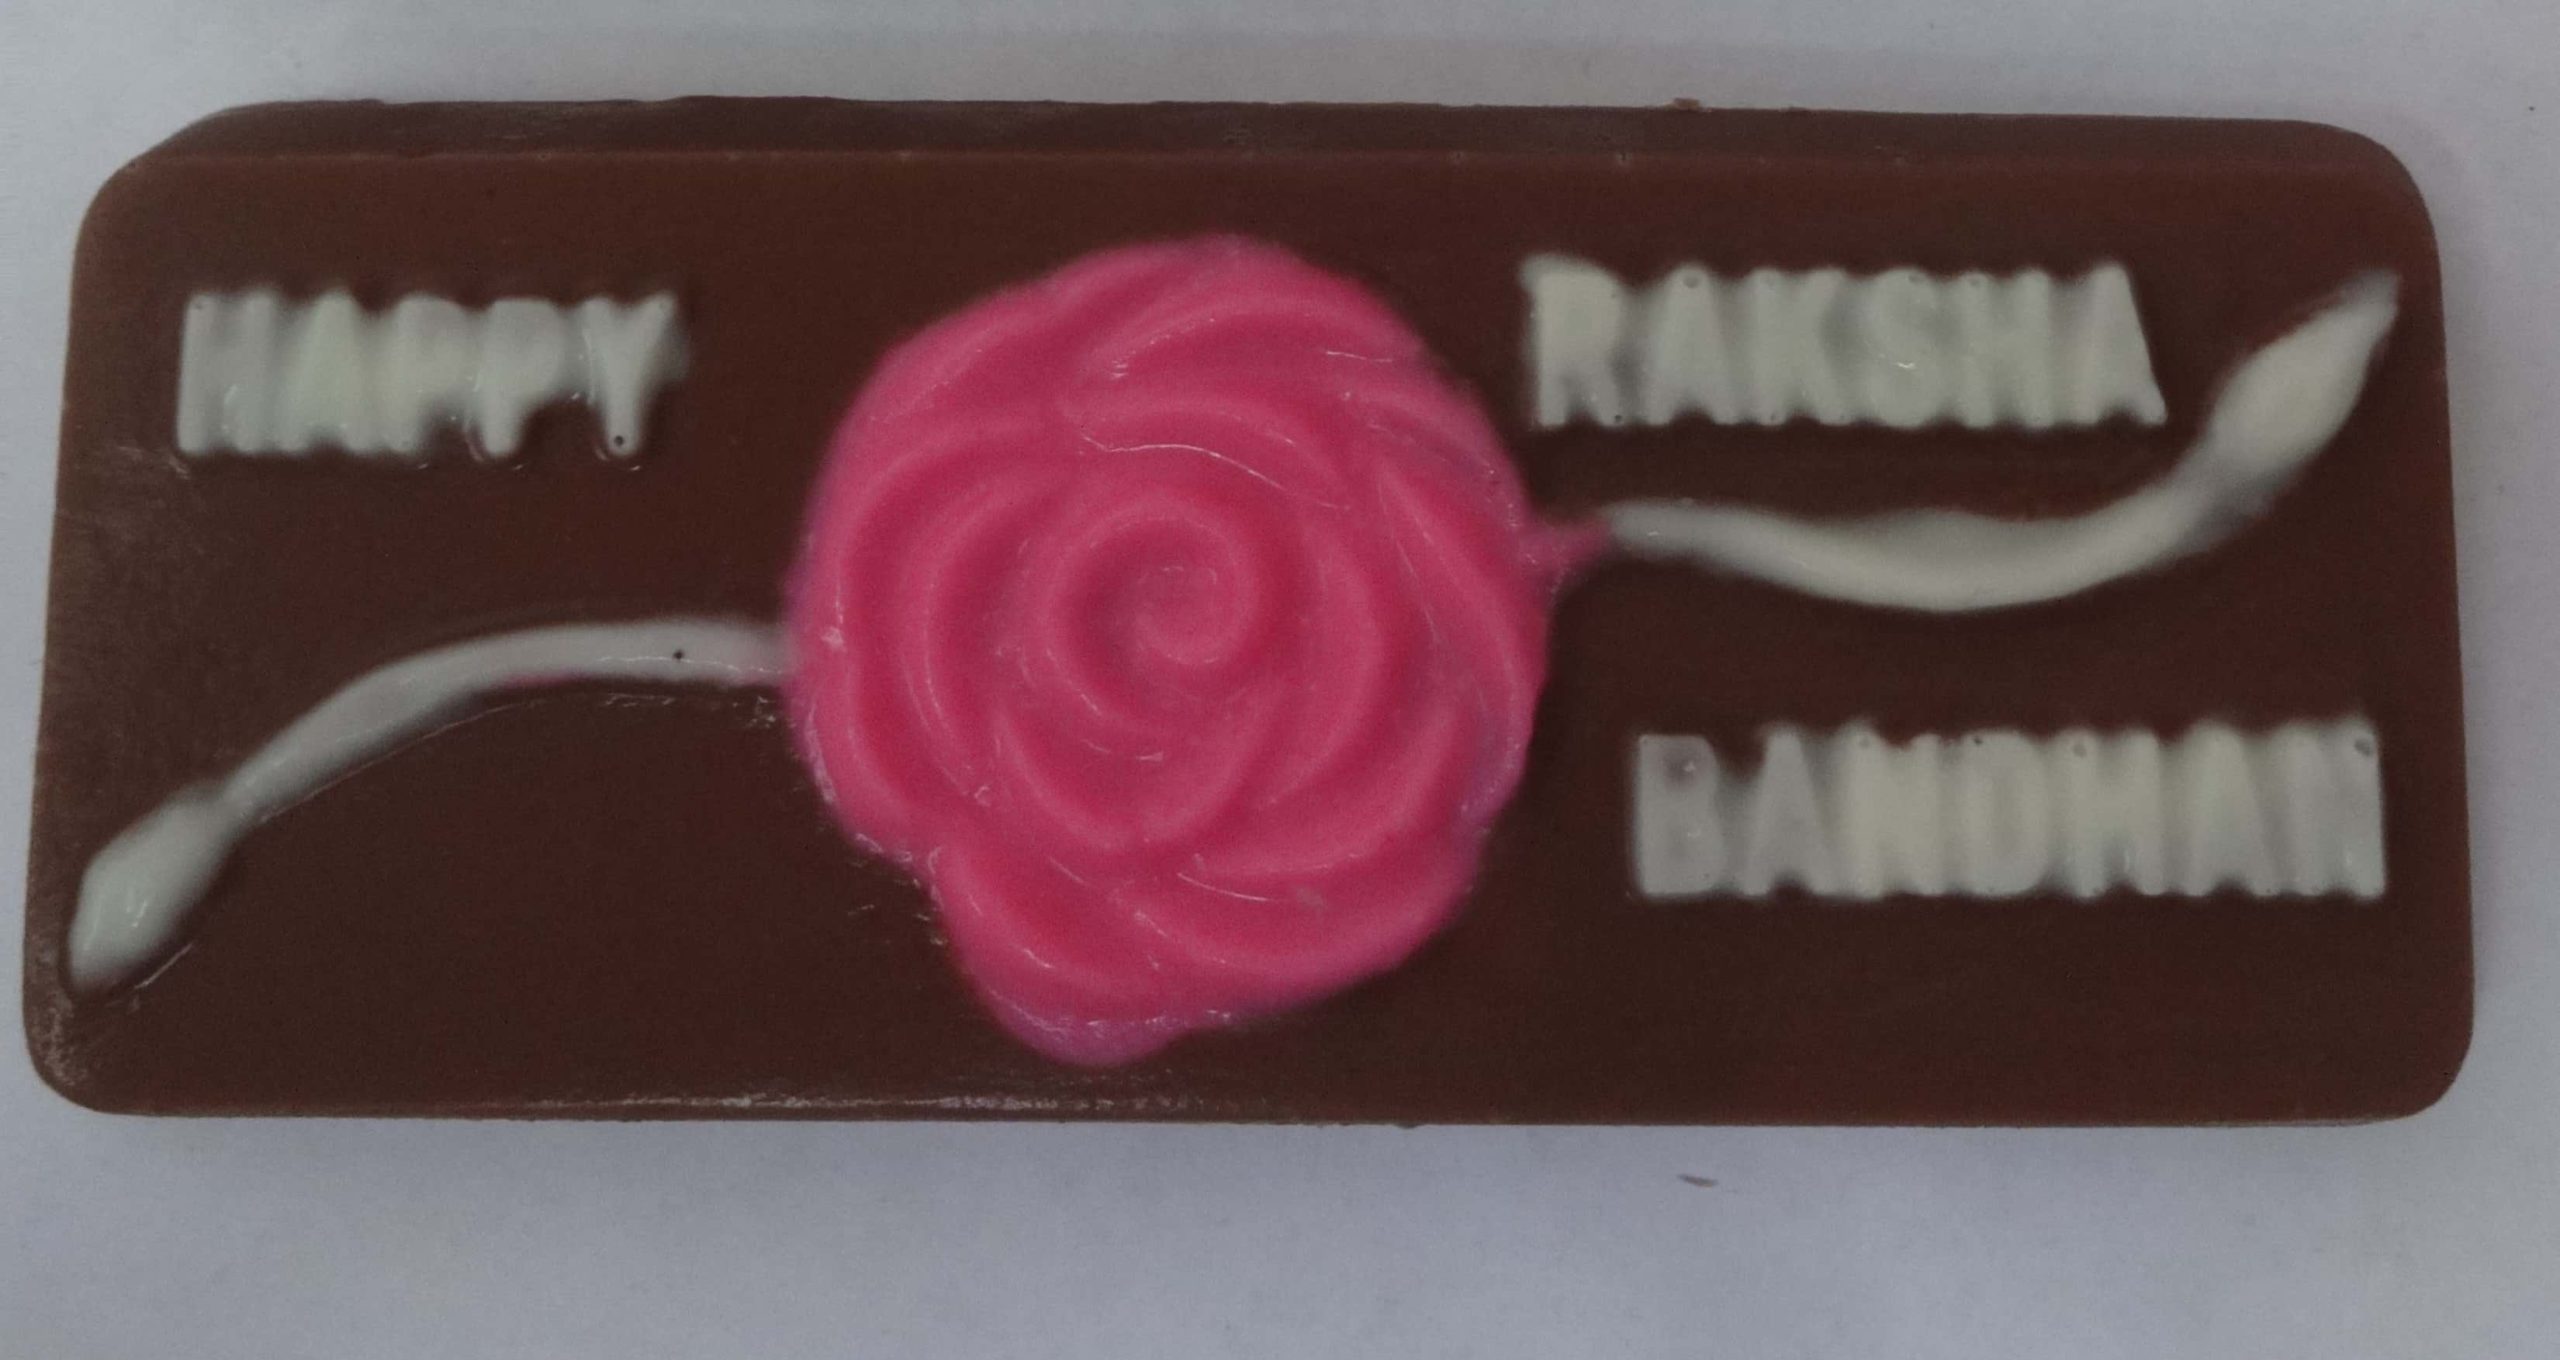 Raksha Bandhan Chocolate Bar Designs, Images, Price Near Me